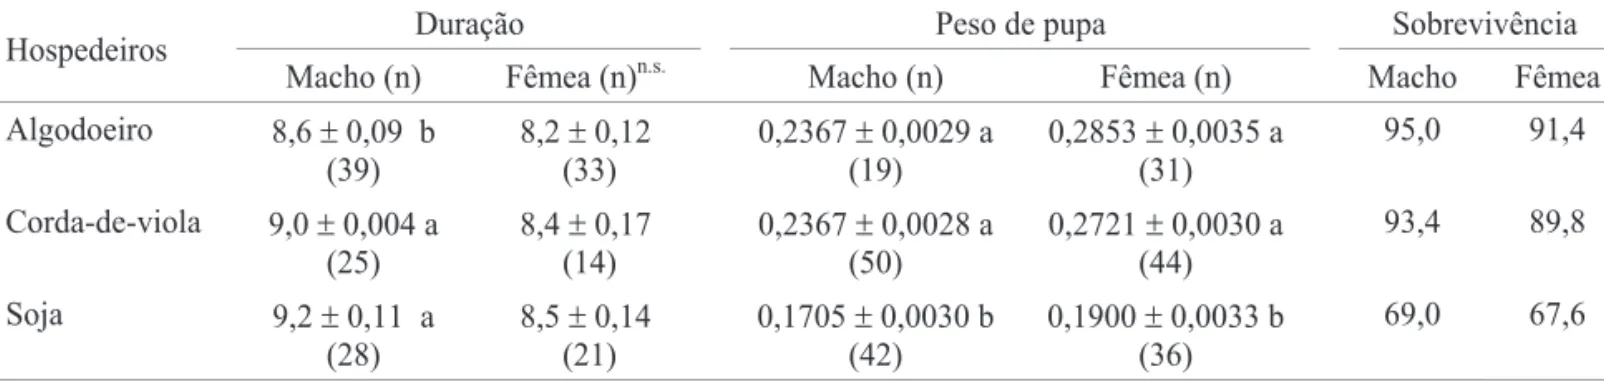 Tabela 3. Médias (±EP) de duração (dias), peso (g) e sobrevivência (%) da fase pupa (macho e fêmea) de S